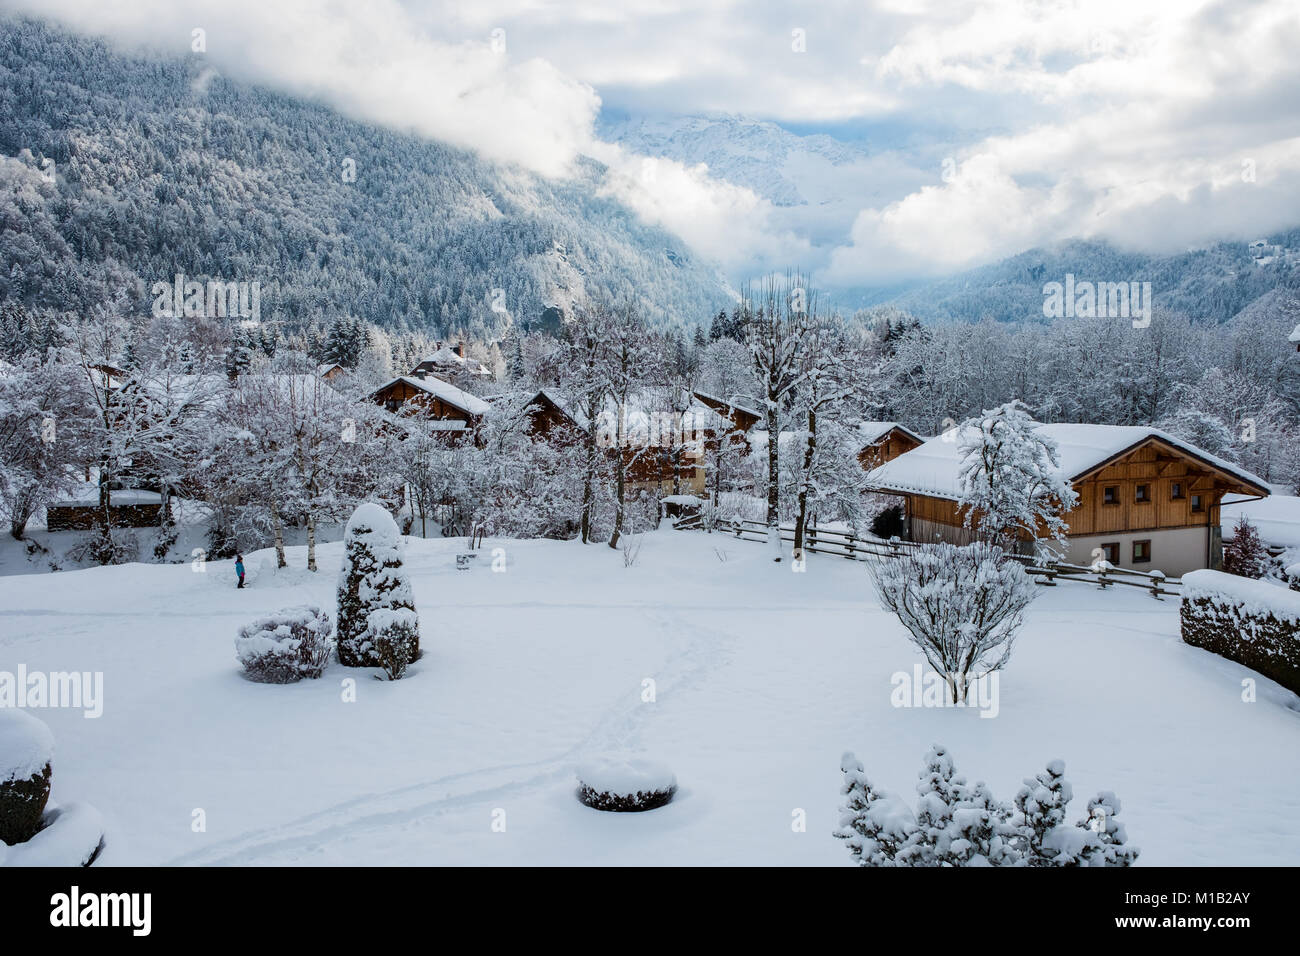 Servoz en hiver, la vallée de Chamonix, France Banque D'Images